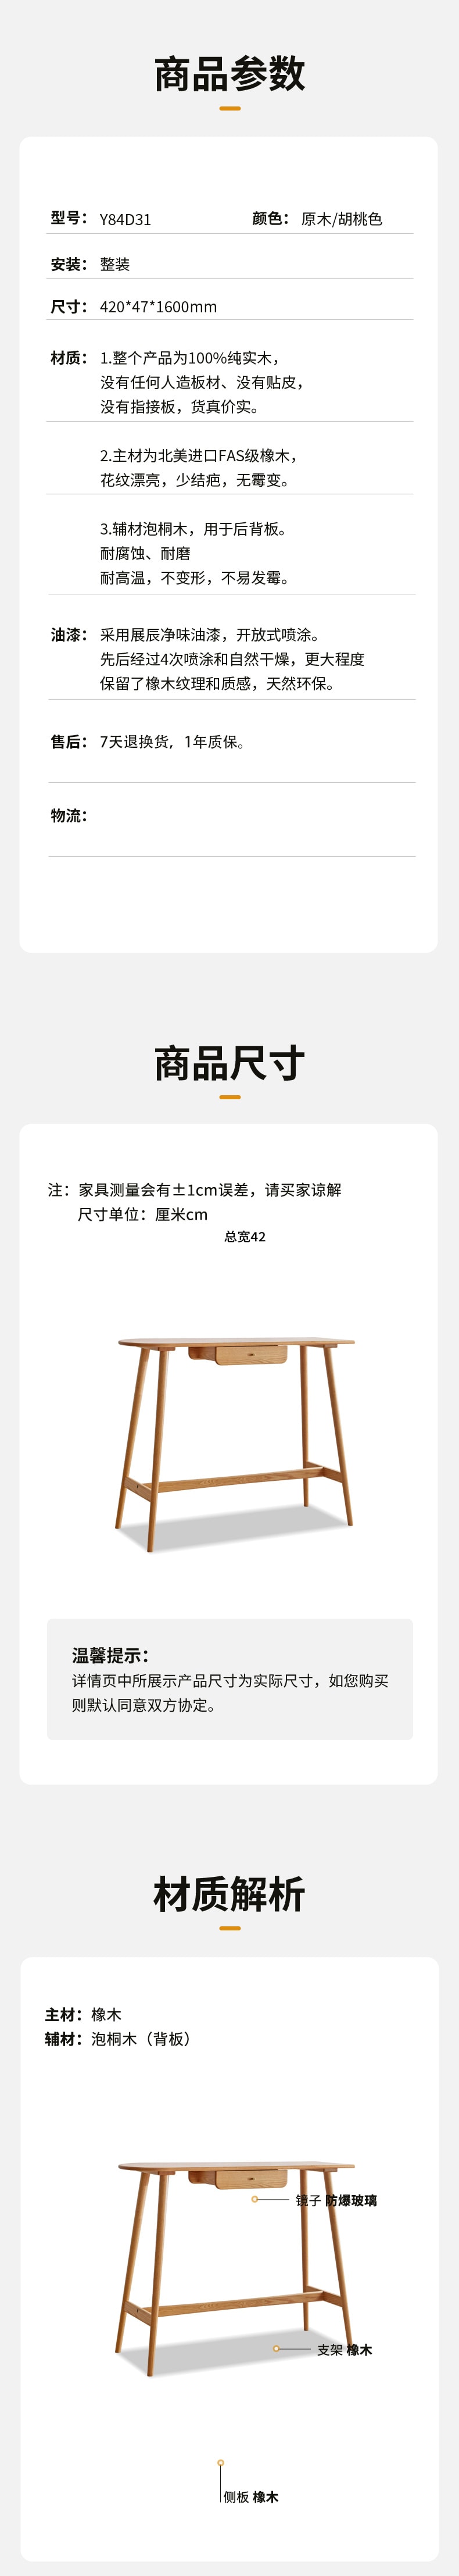 源氏木语 吧台桌 1pc 【中国实木家具第一品牌】